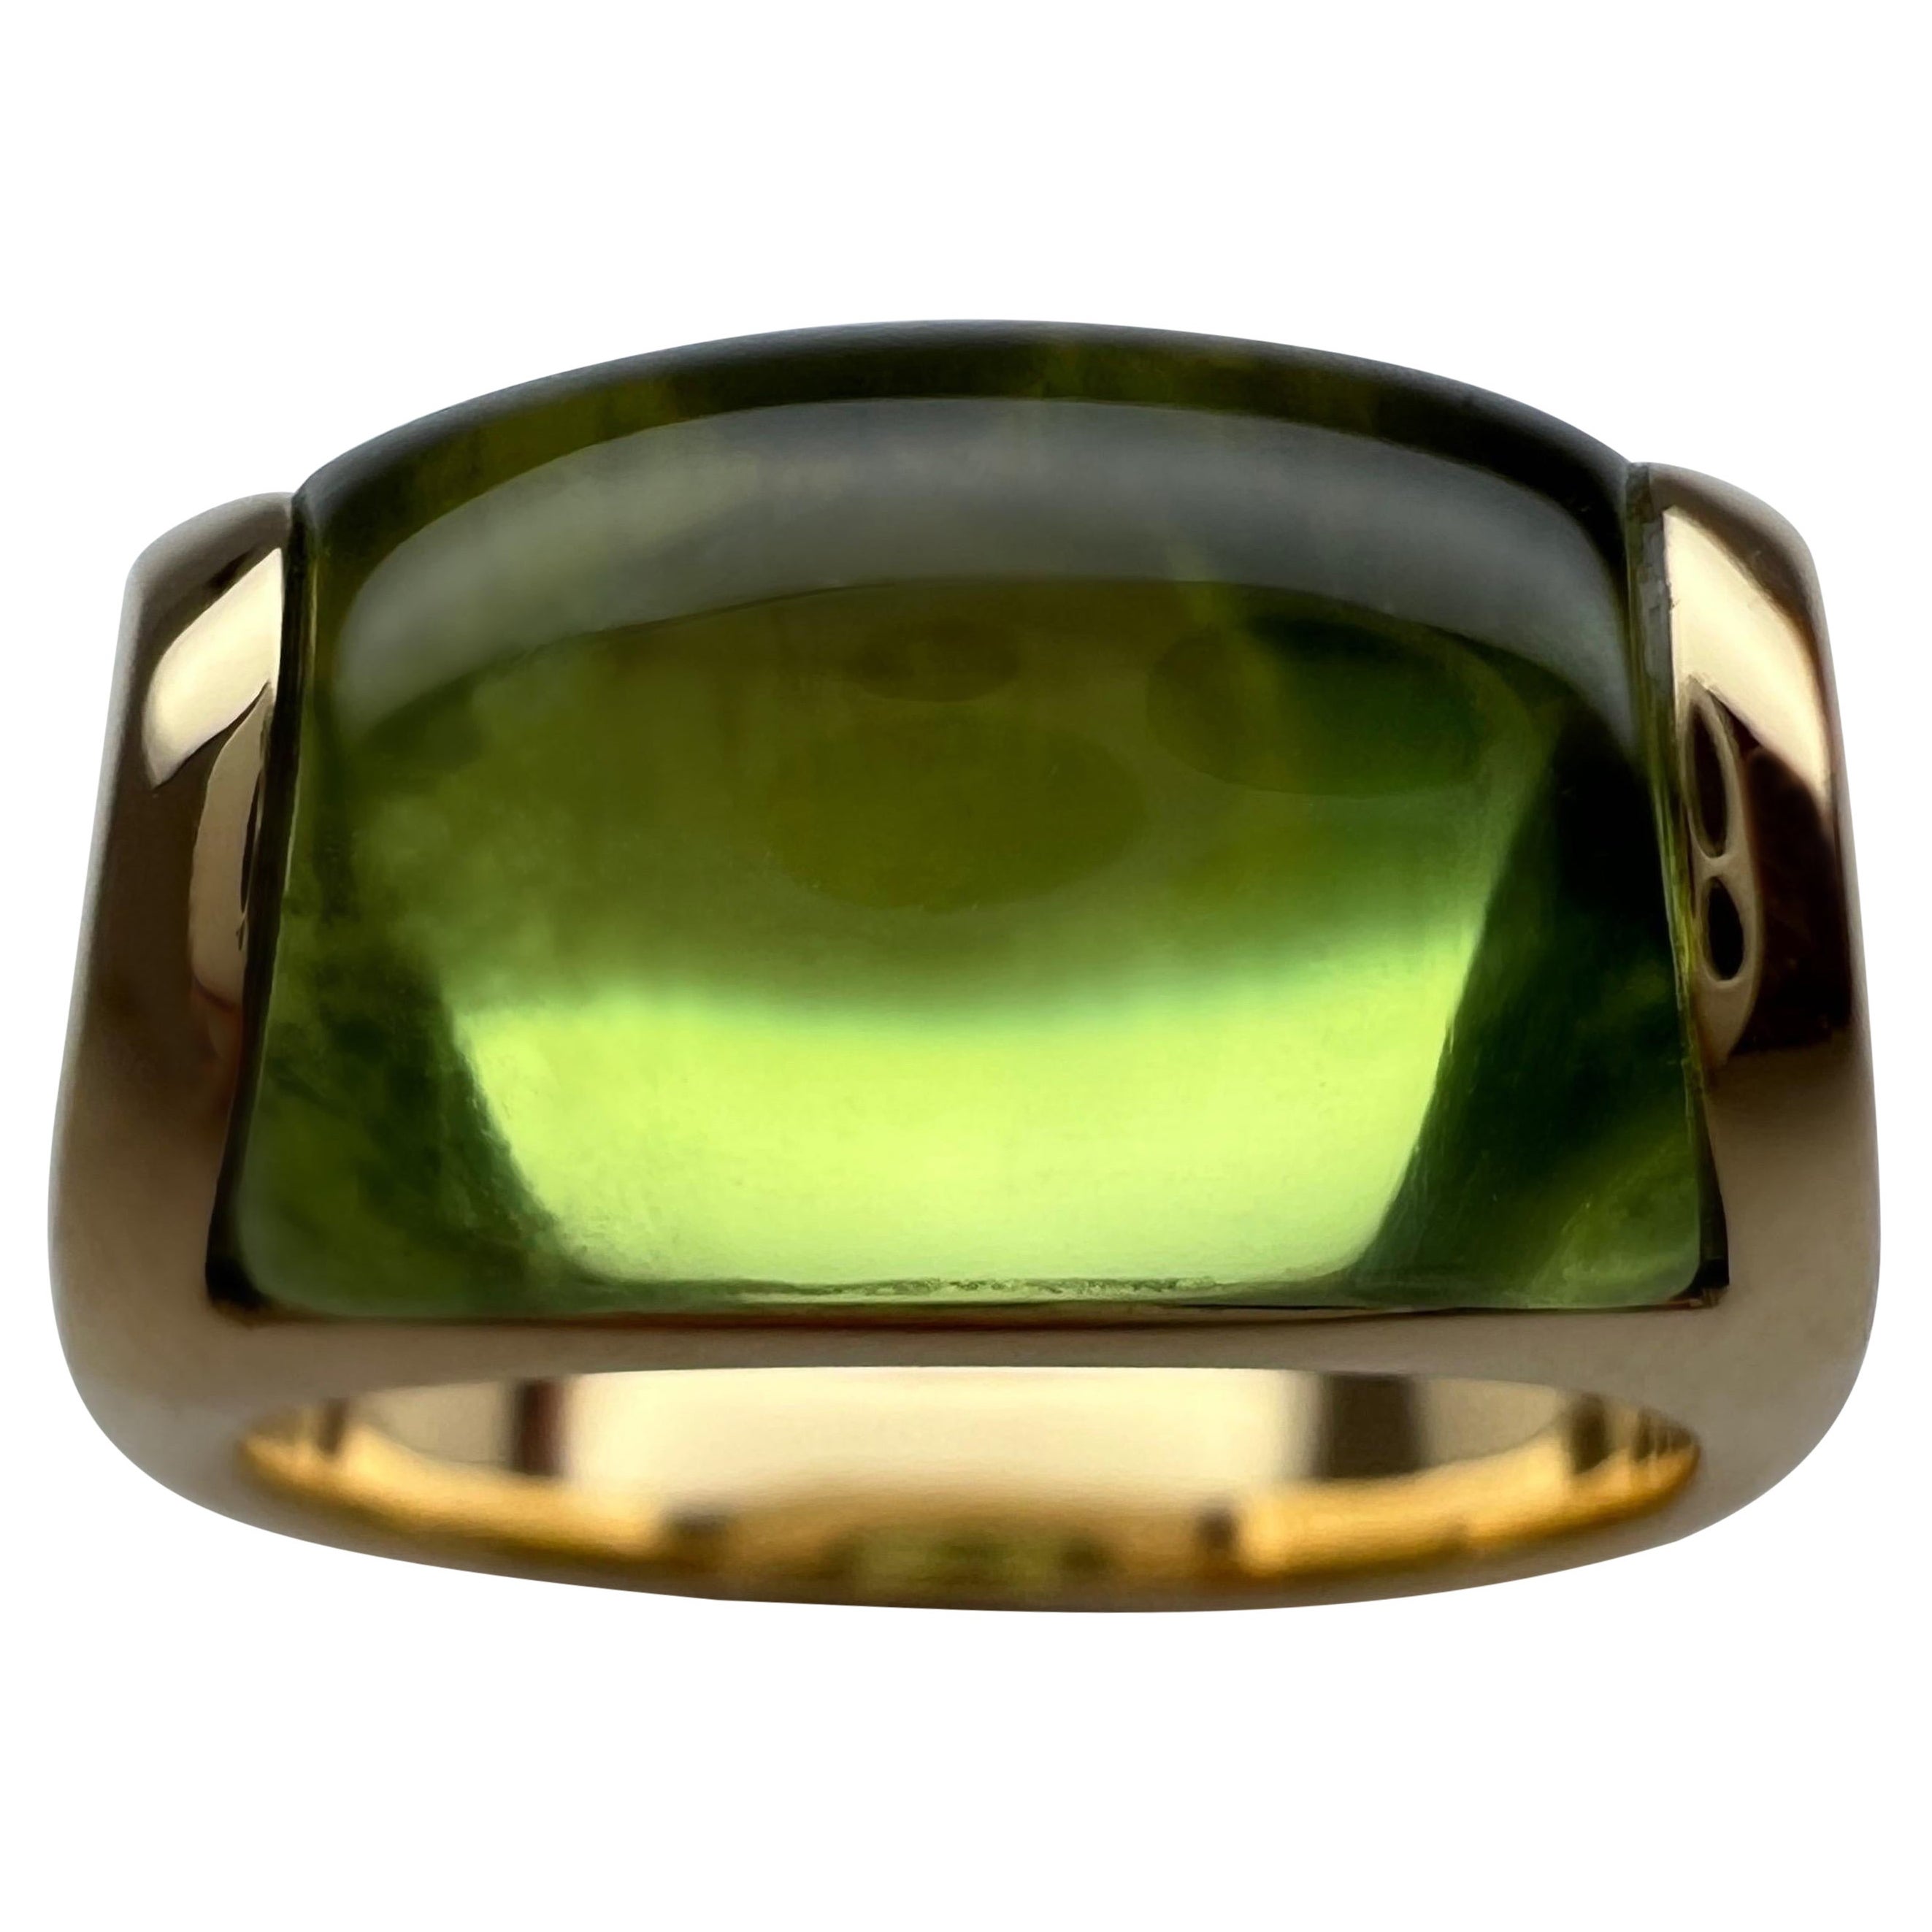 Rare Bvlgari Bulgari Tronchetto 18k Yellow Gold Green Tourmaline Ring with Box